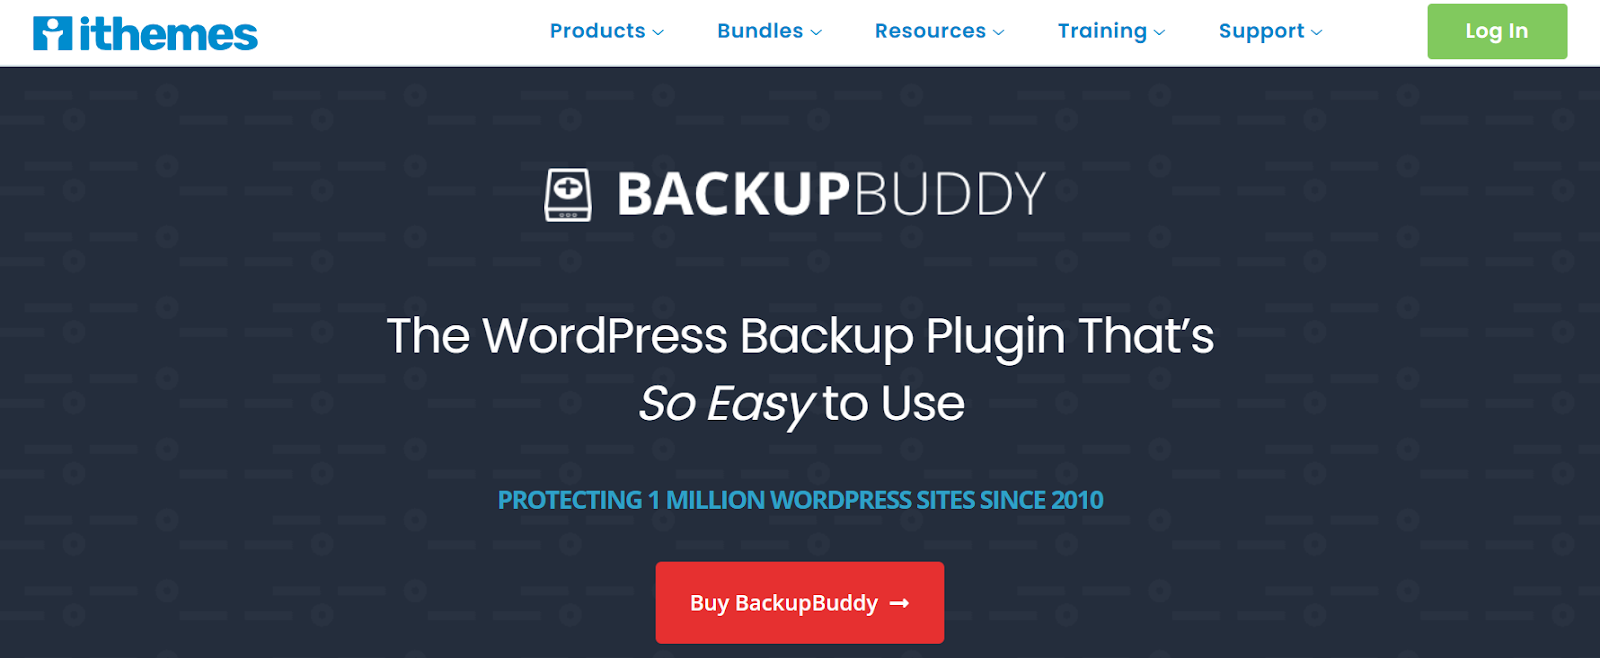 BackupBuddy homepage